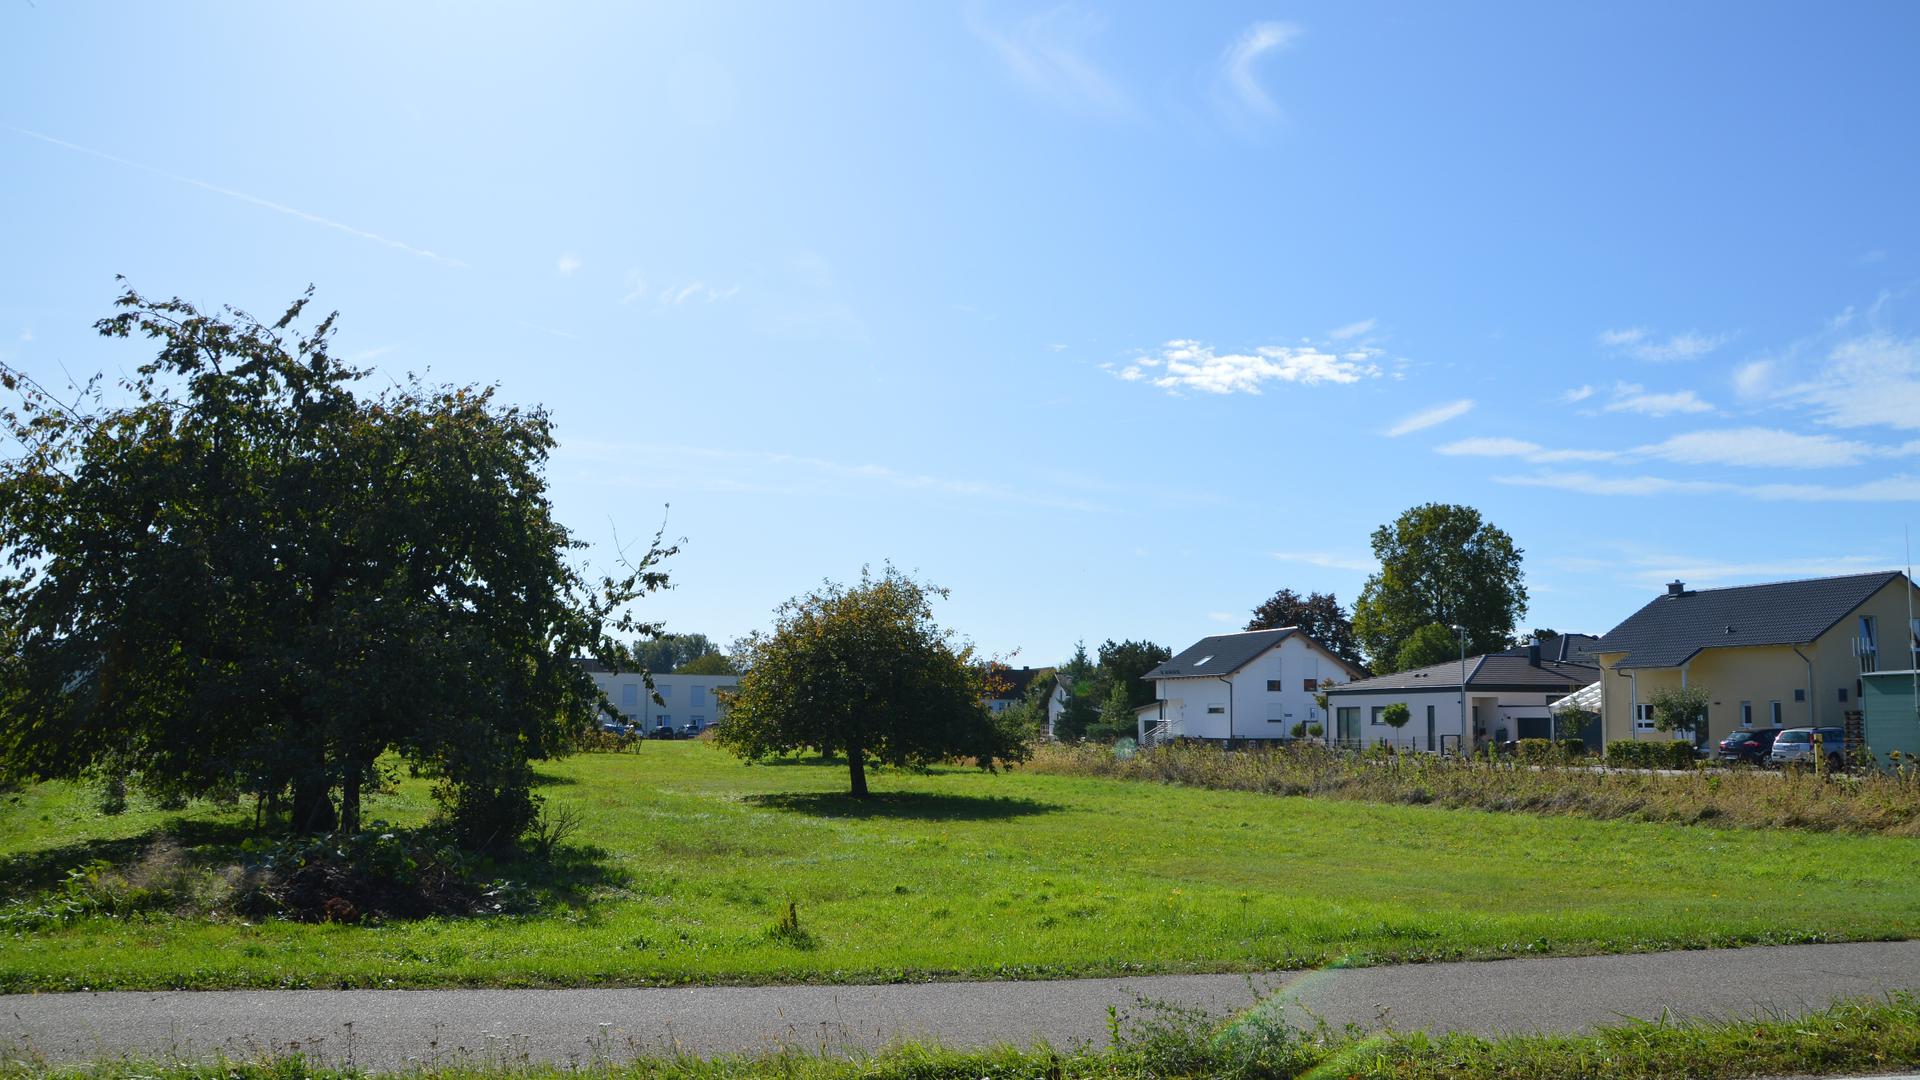 Bäume, dazwischen Seniorenwohnheim, rechte Seite Bebauung mit Häusern